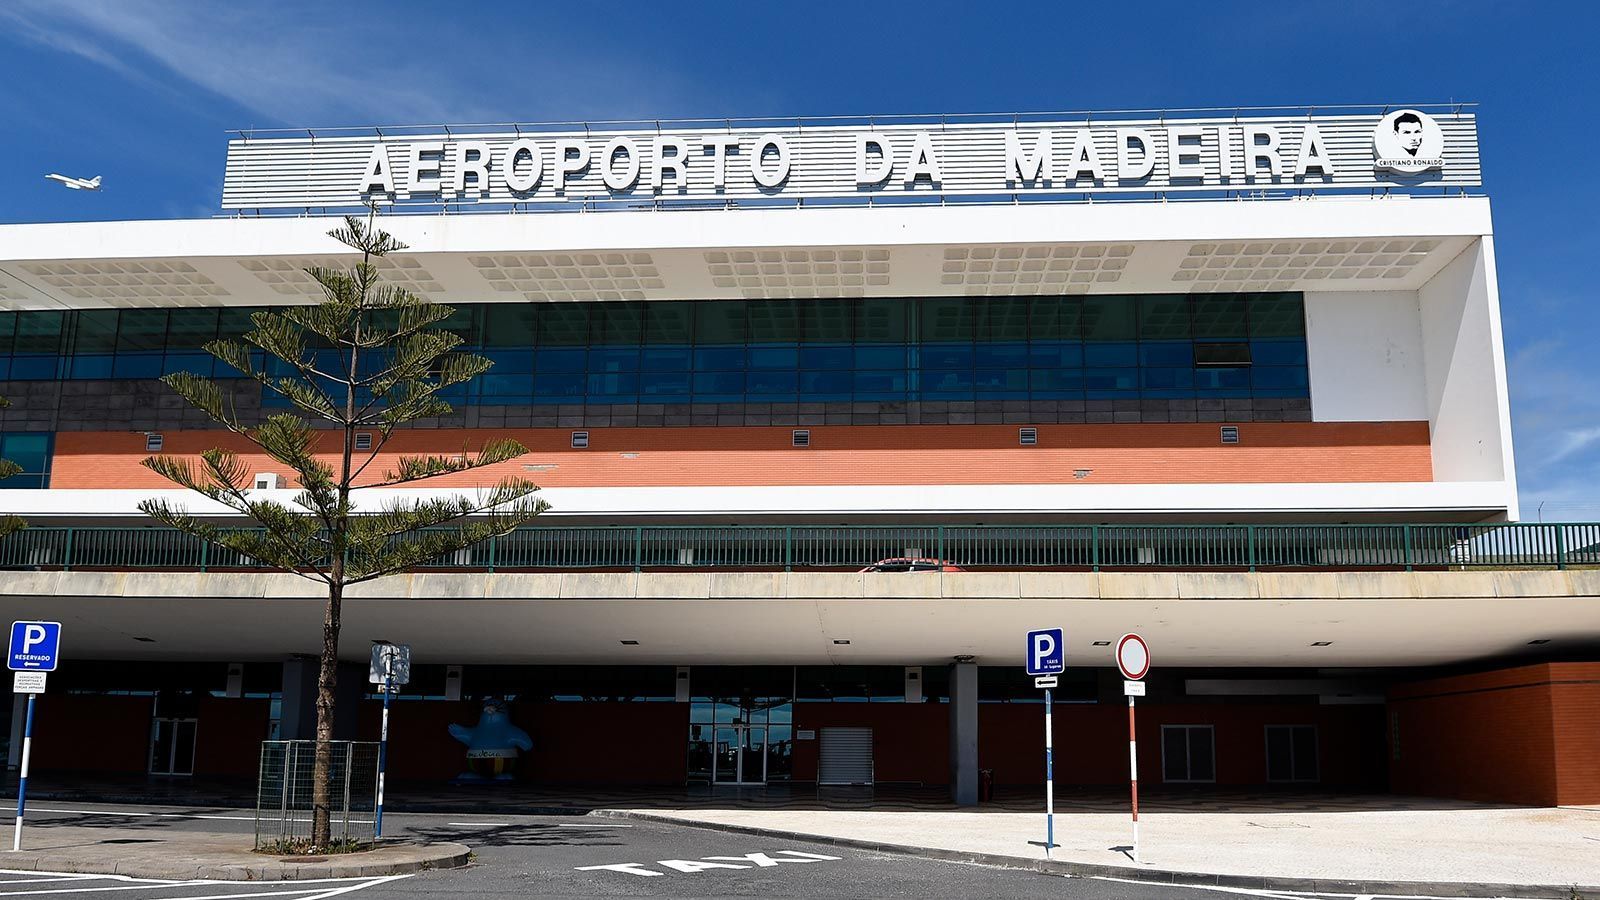 
                <strong>Flughafen auf Madeira</strong><br>
                So beliebt Cristiano Ronaldo auf "seiner Insel" auch ist, scheinbar gab es nicht nur positive Reaktionen auf die Flughafen-Umbenennung. Laut der Zeitung "A Bola" kamen über 2.500 Protest-Unterschriften zusammen.
              